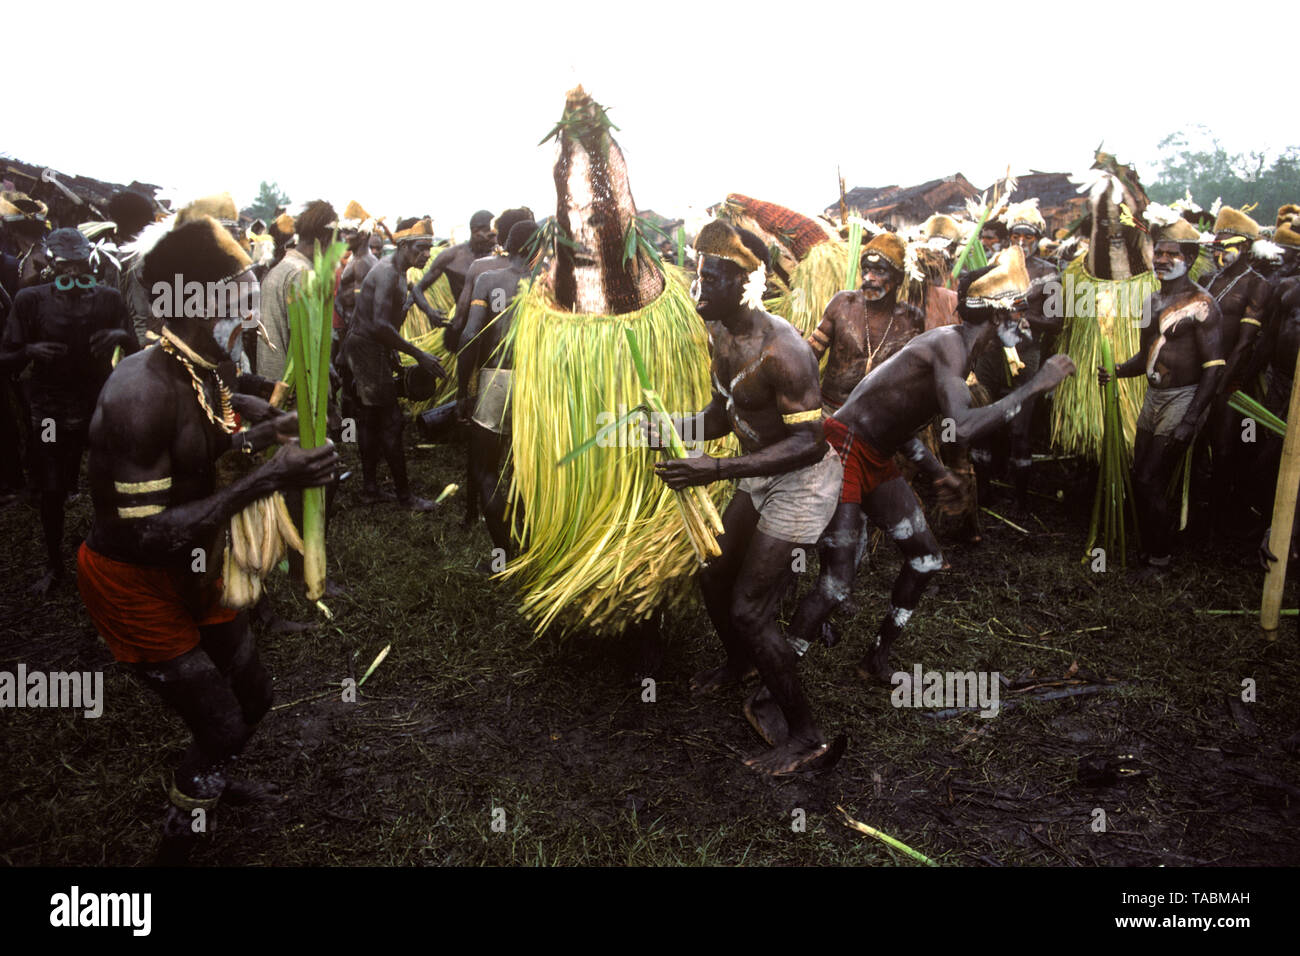 Asmat persone: gruppi etnici che vivono nella provincia di Papua di Indonesia, lungo il mare Arafura. Personaggi mascherati durante un festival di Agats ('uccisione e Foto Stock